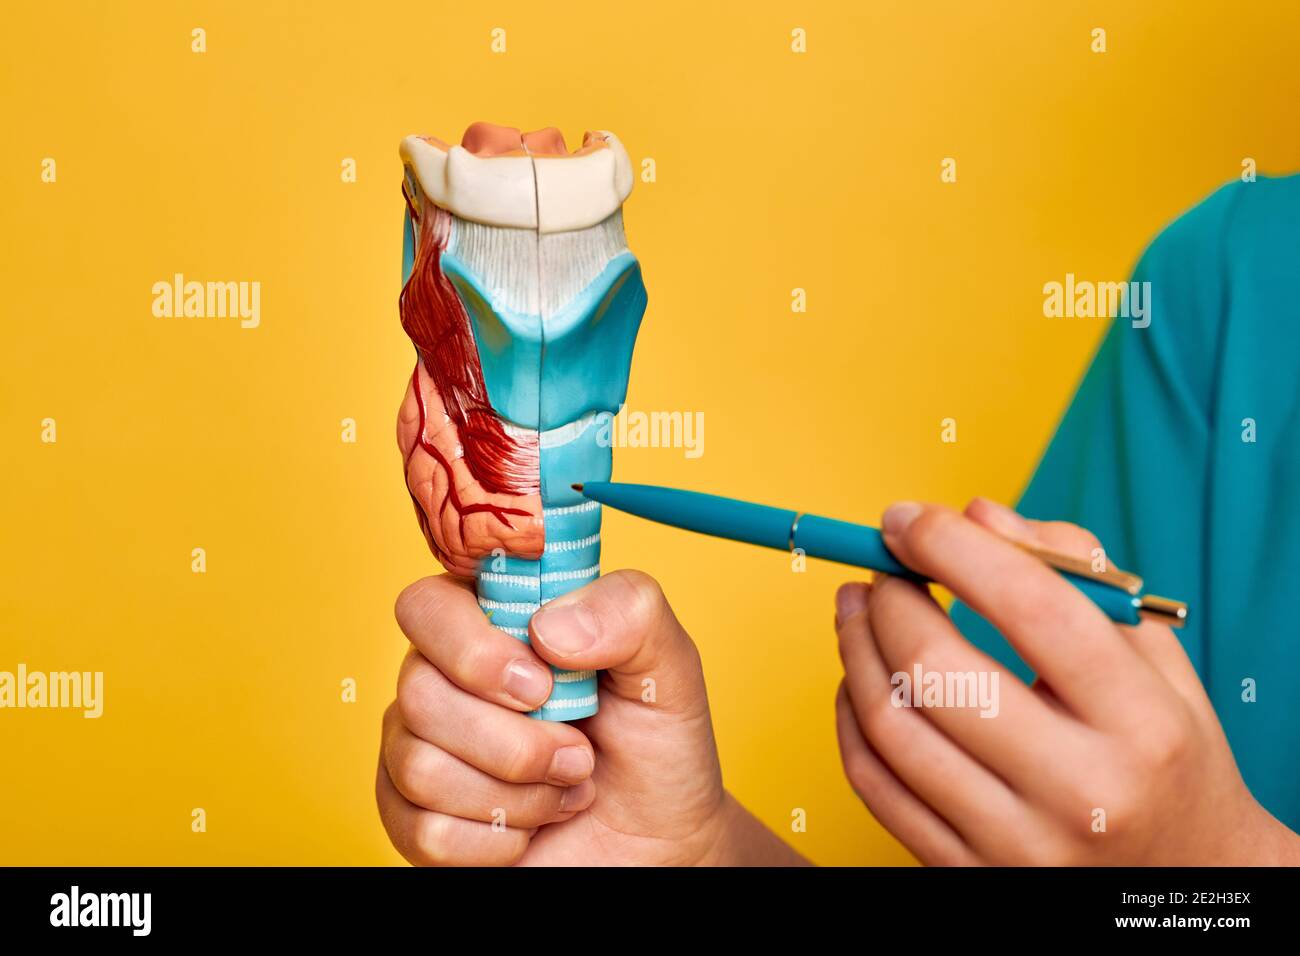 Anatomisches Modell der Schilddrüse zur Untersuchung der menschlichen Anatomie in den Händen des Kindes, Nahaufnahme. Schulbildung, Anatomieunterricht, auf gelbem Hintergrund Stockfoto